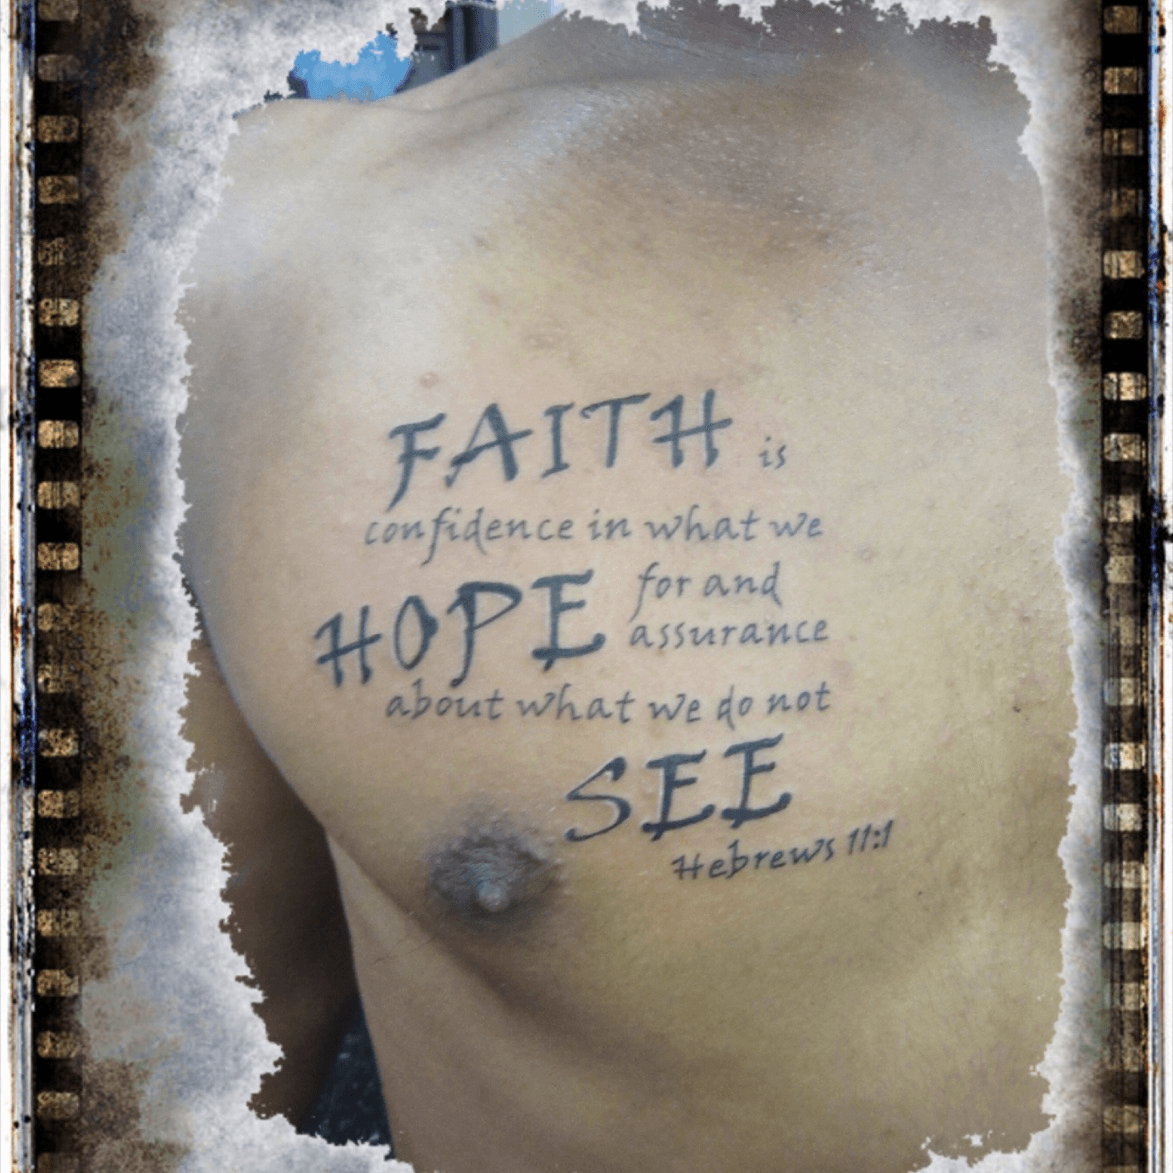 Hebrews 111 tattoo  Future tattoos Tattoos I tattoo